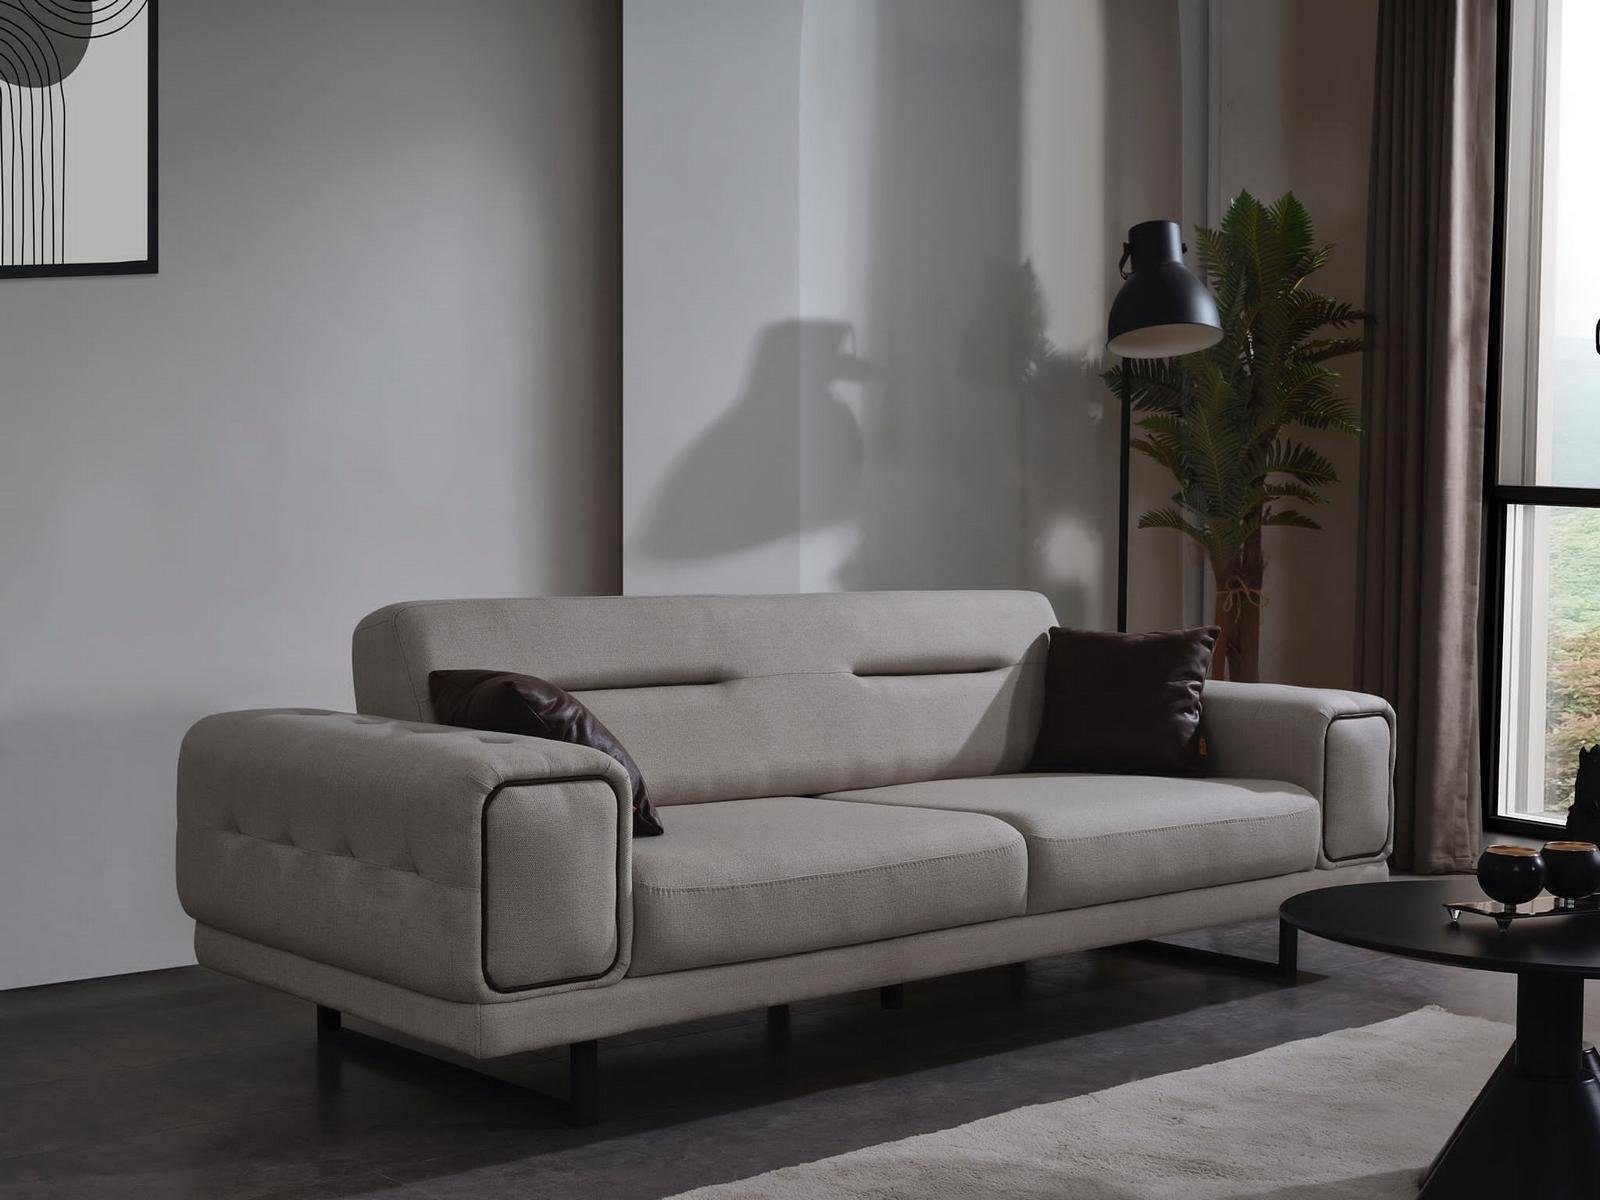 JVmoebel Sofa Modern Dreisitzer Sofa Wohnzimmer Einrichtung Luxus Sofas Couch Neu, 1 Teile, MAde in Europa